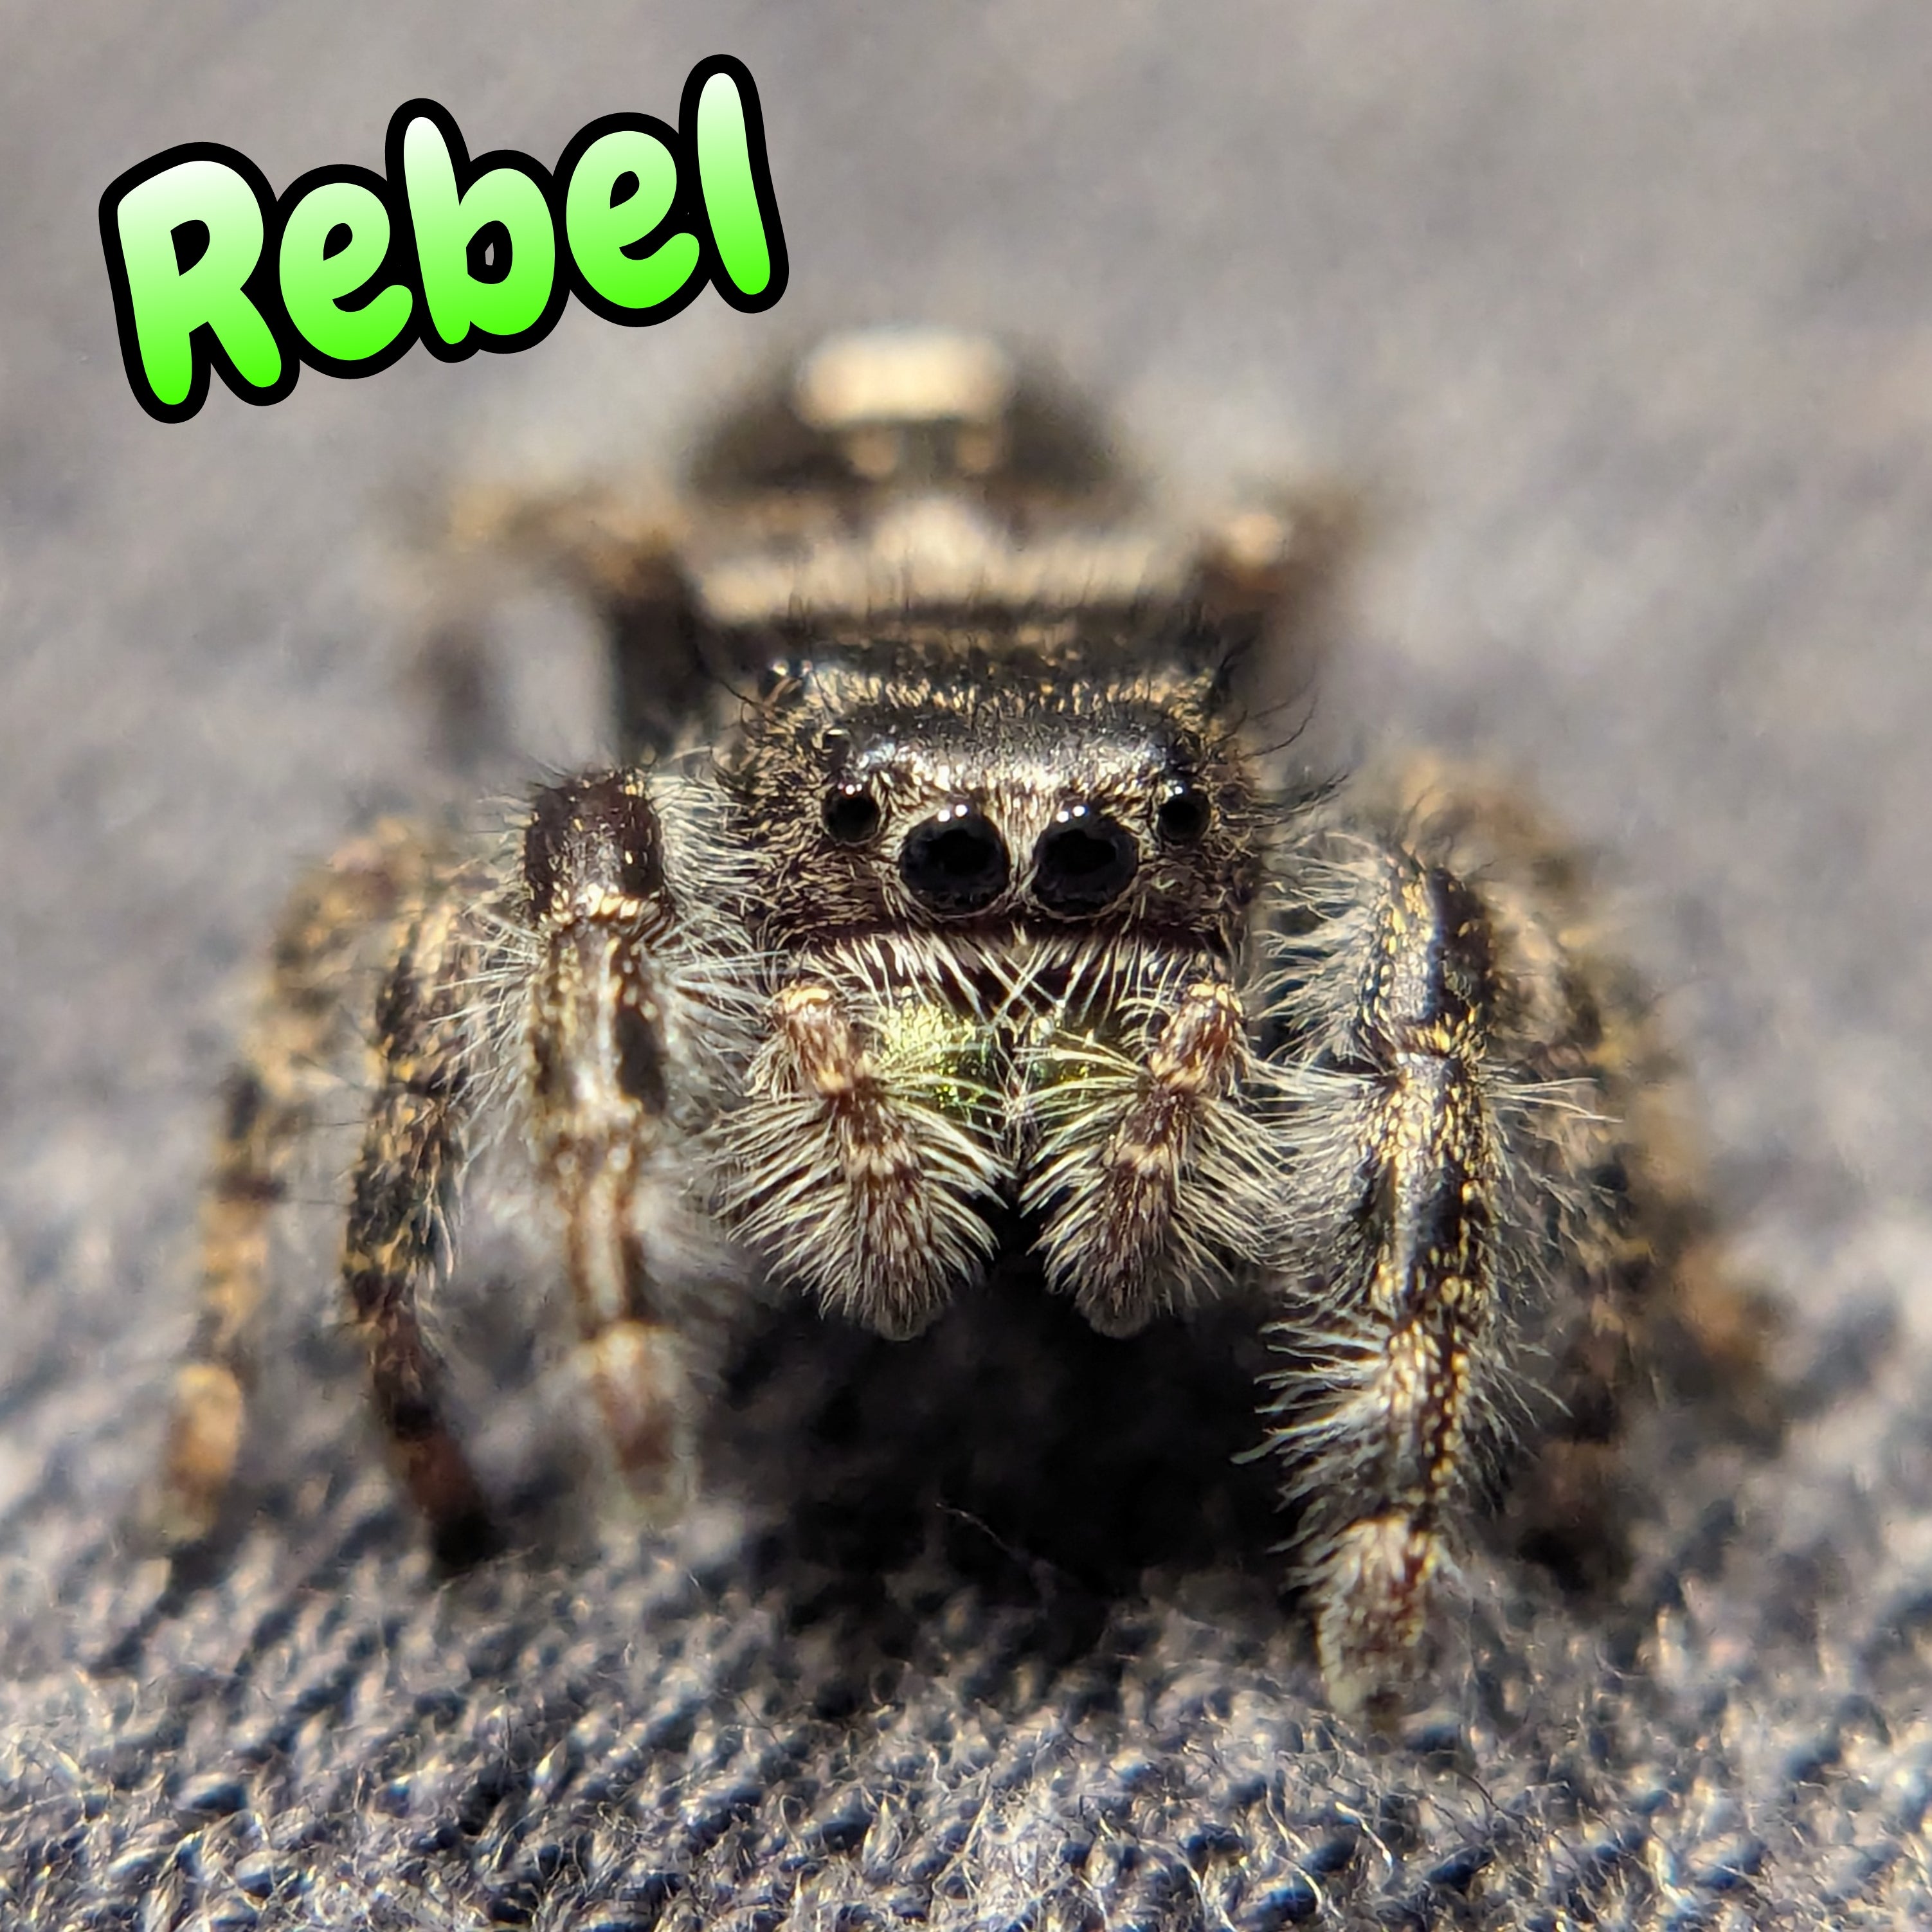 Audax Jumping Spider "Rebel"